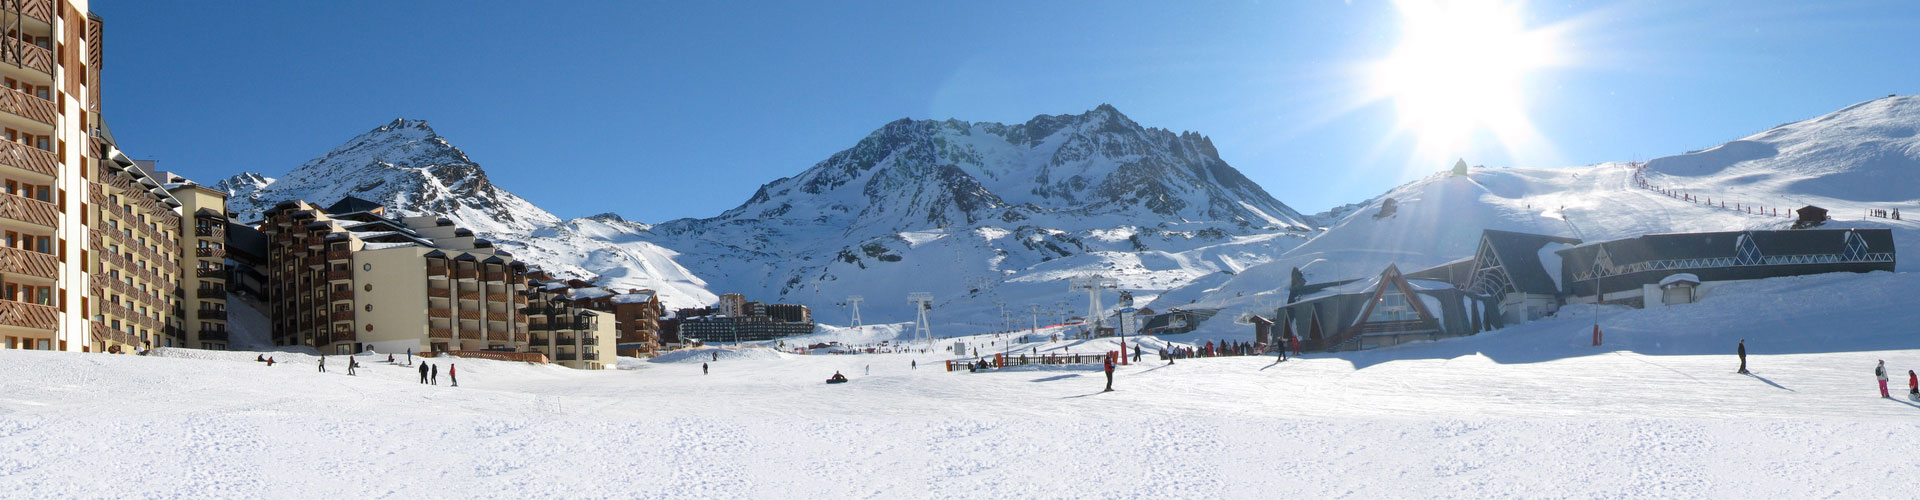 Val Thorens Ski slopes with snow